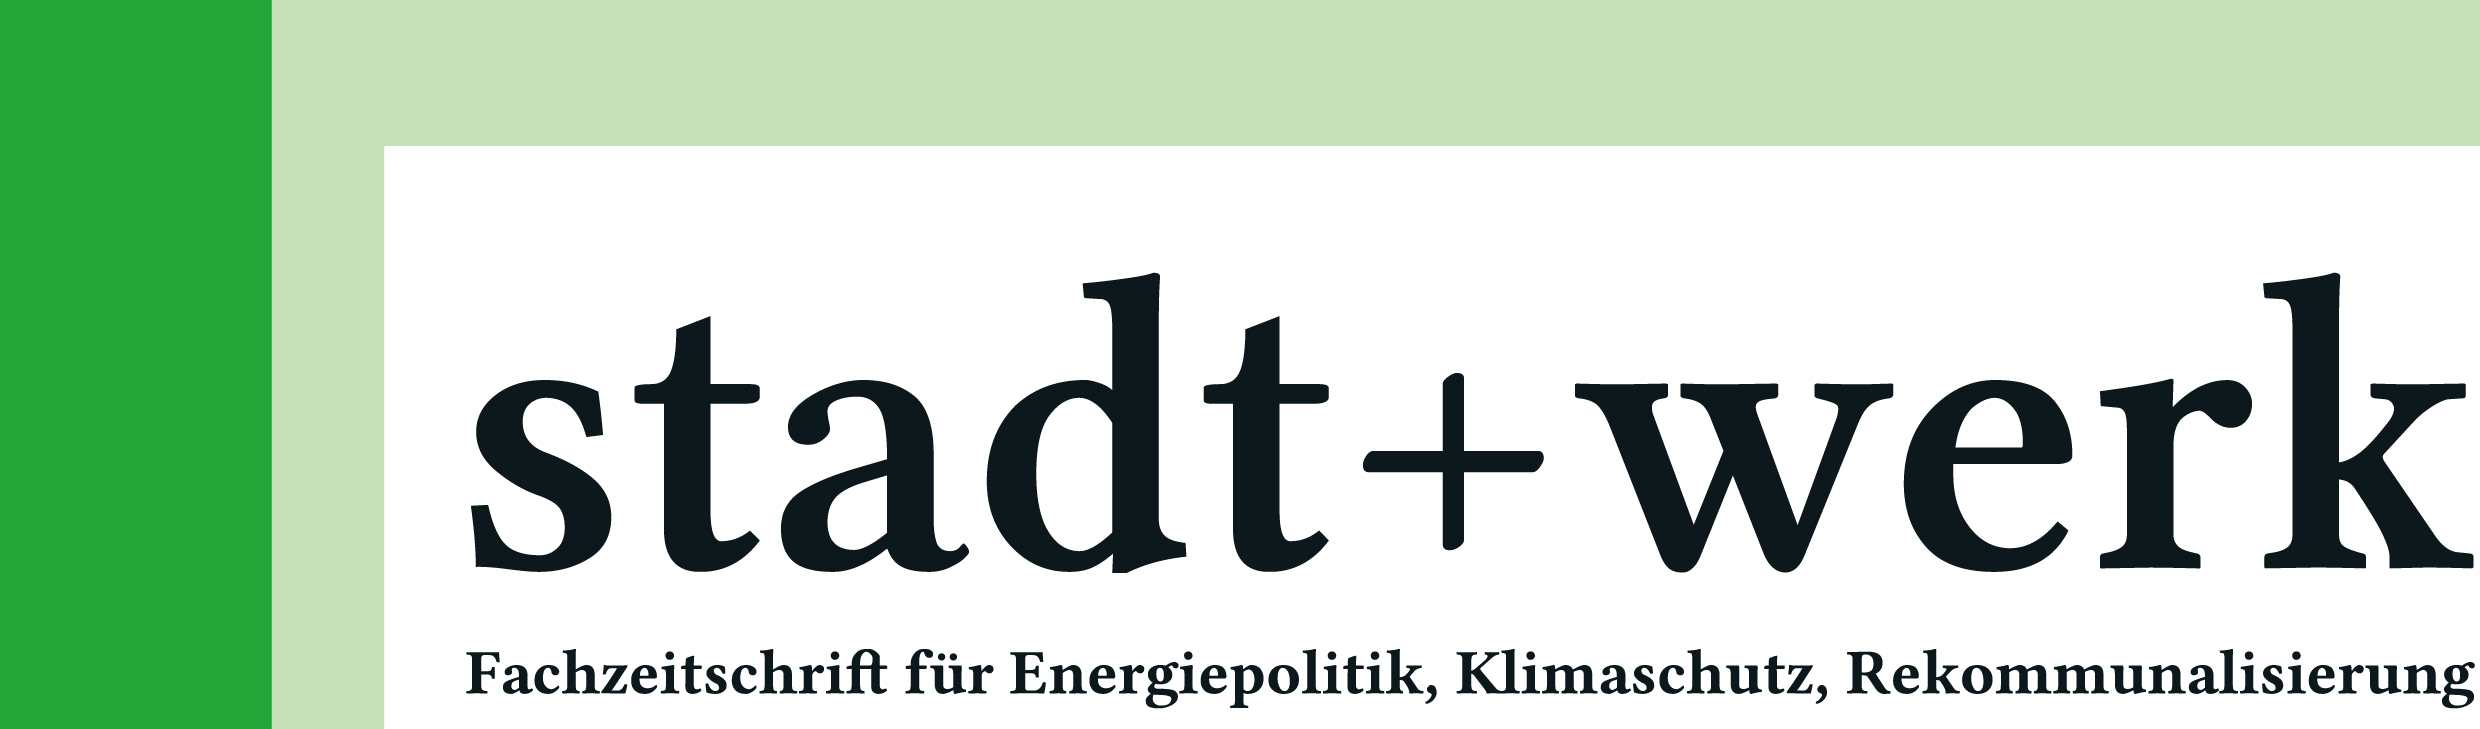 Logo https://www.stadt-und-werk.de/